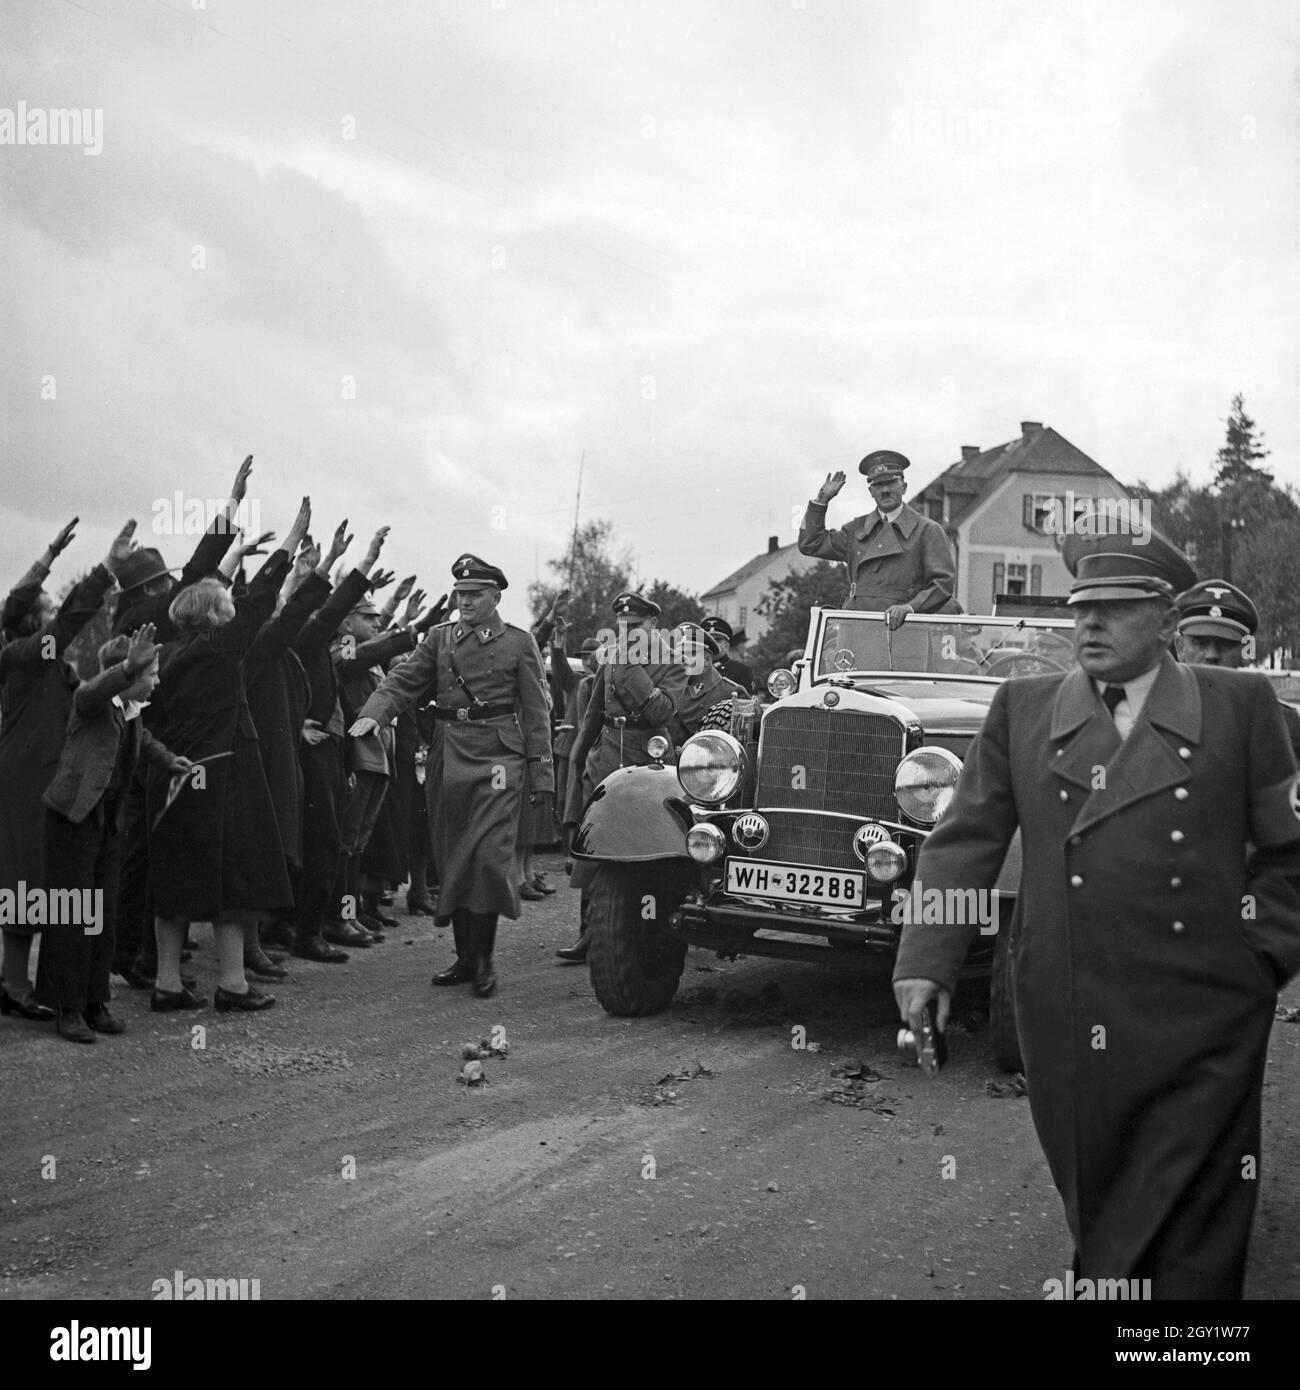 Führer und Reichskanzler Adolf Hitler bei seinem Besuch in Asch im Sudetenland, Deutschland 1930er Jahre. Fuehrer and chancellor Adolf Hitler visiting the city of Asch in Sudetenland county, Germany 1930s. Stock Photo